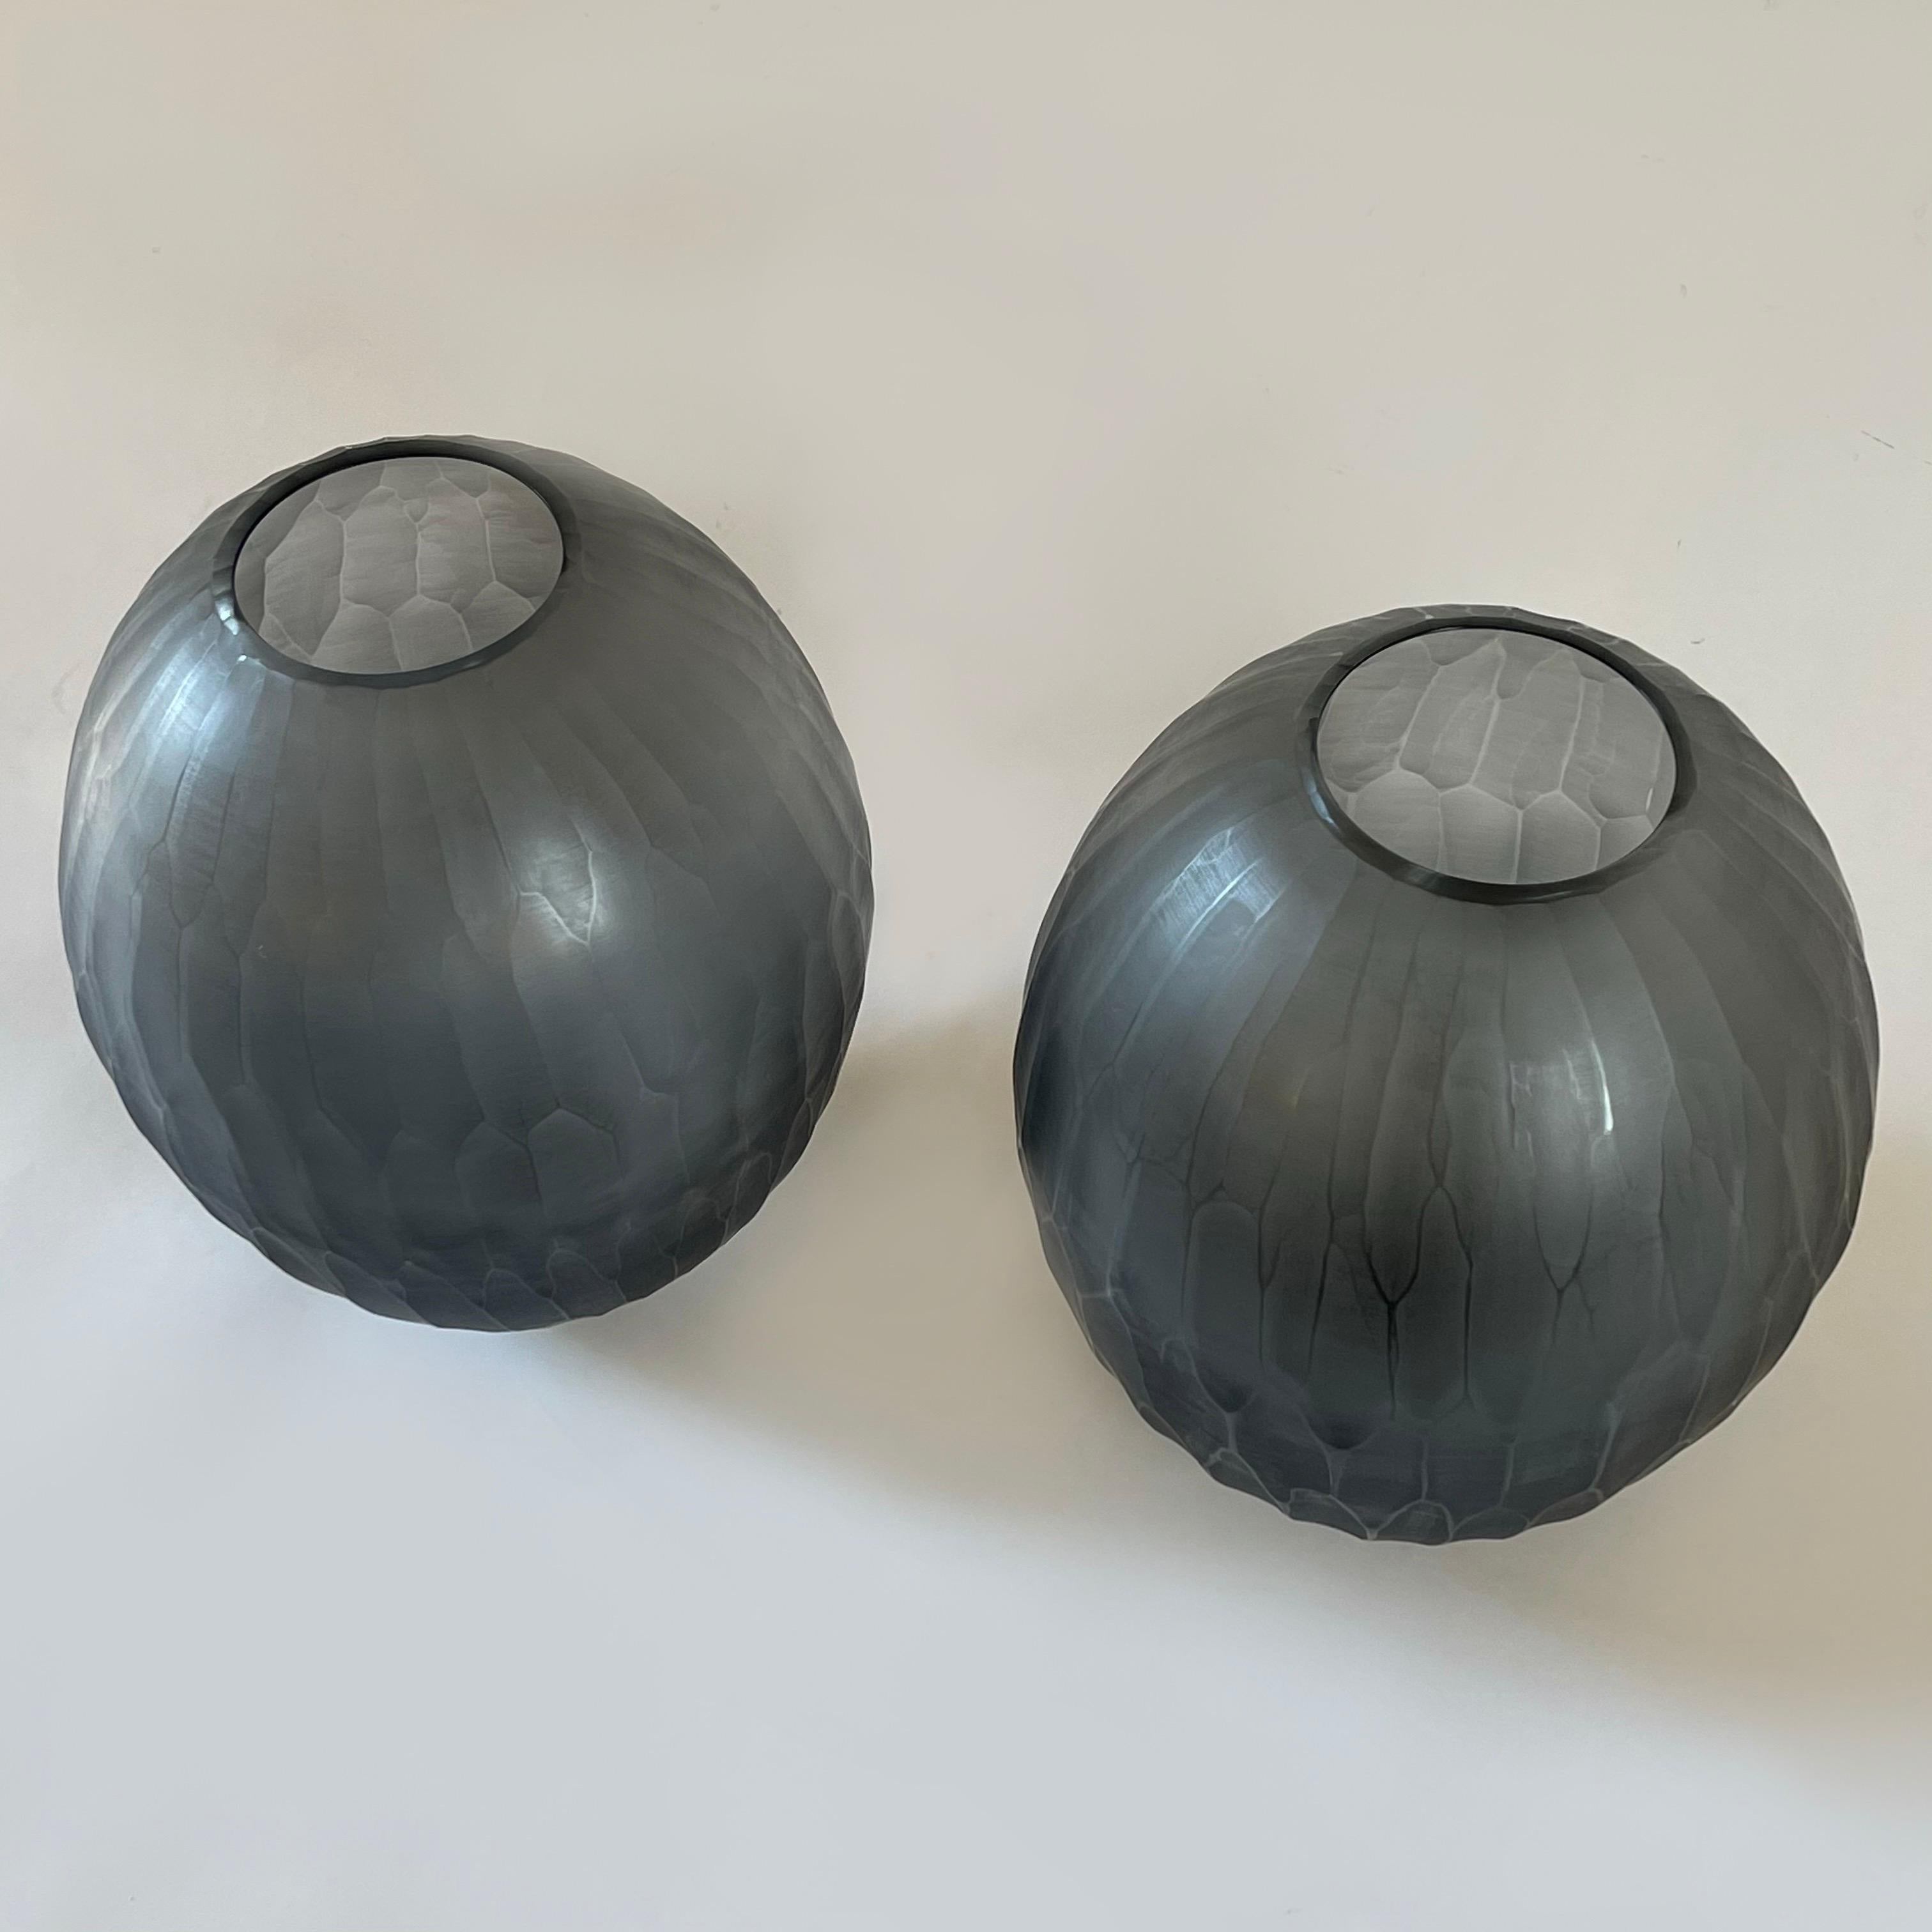 Ein Paar skulpturale Vasen, die Davide Donà zugeschrieben werden. Handgefertigtes facettiertes graues Muranoglas. Unsignierte Stücke.
Davide Donà erlernte die Glasherstellung zunächst in einem Paperweight-Ofen, dann ab 1998 im Unternehmen seines